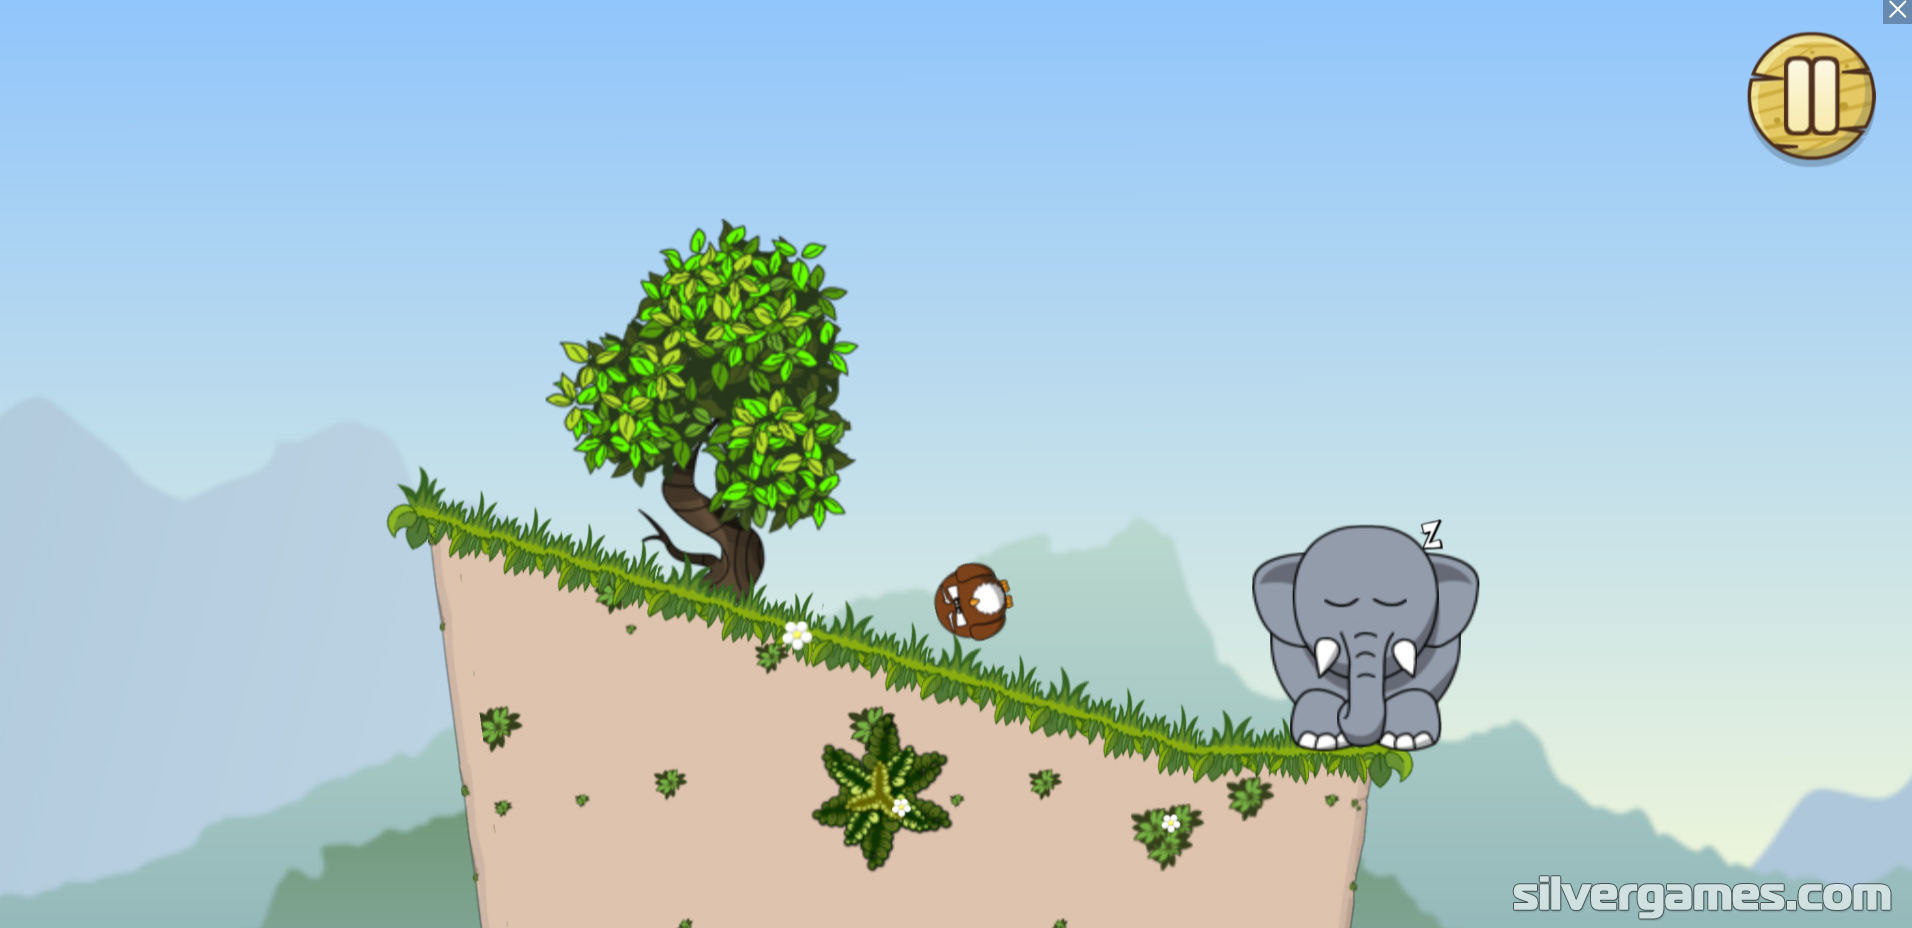 Snoring elephant. Игра "слон". Разбуди слона. Игры про слонов. Игра храпящий слон.